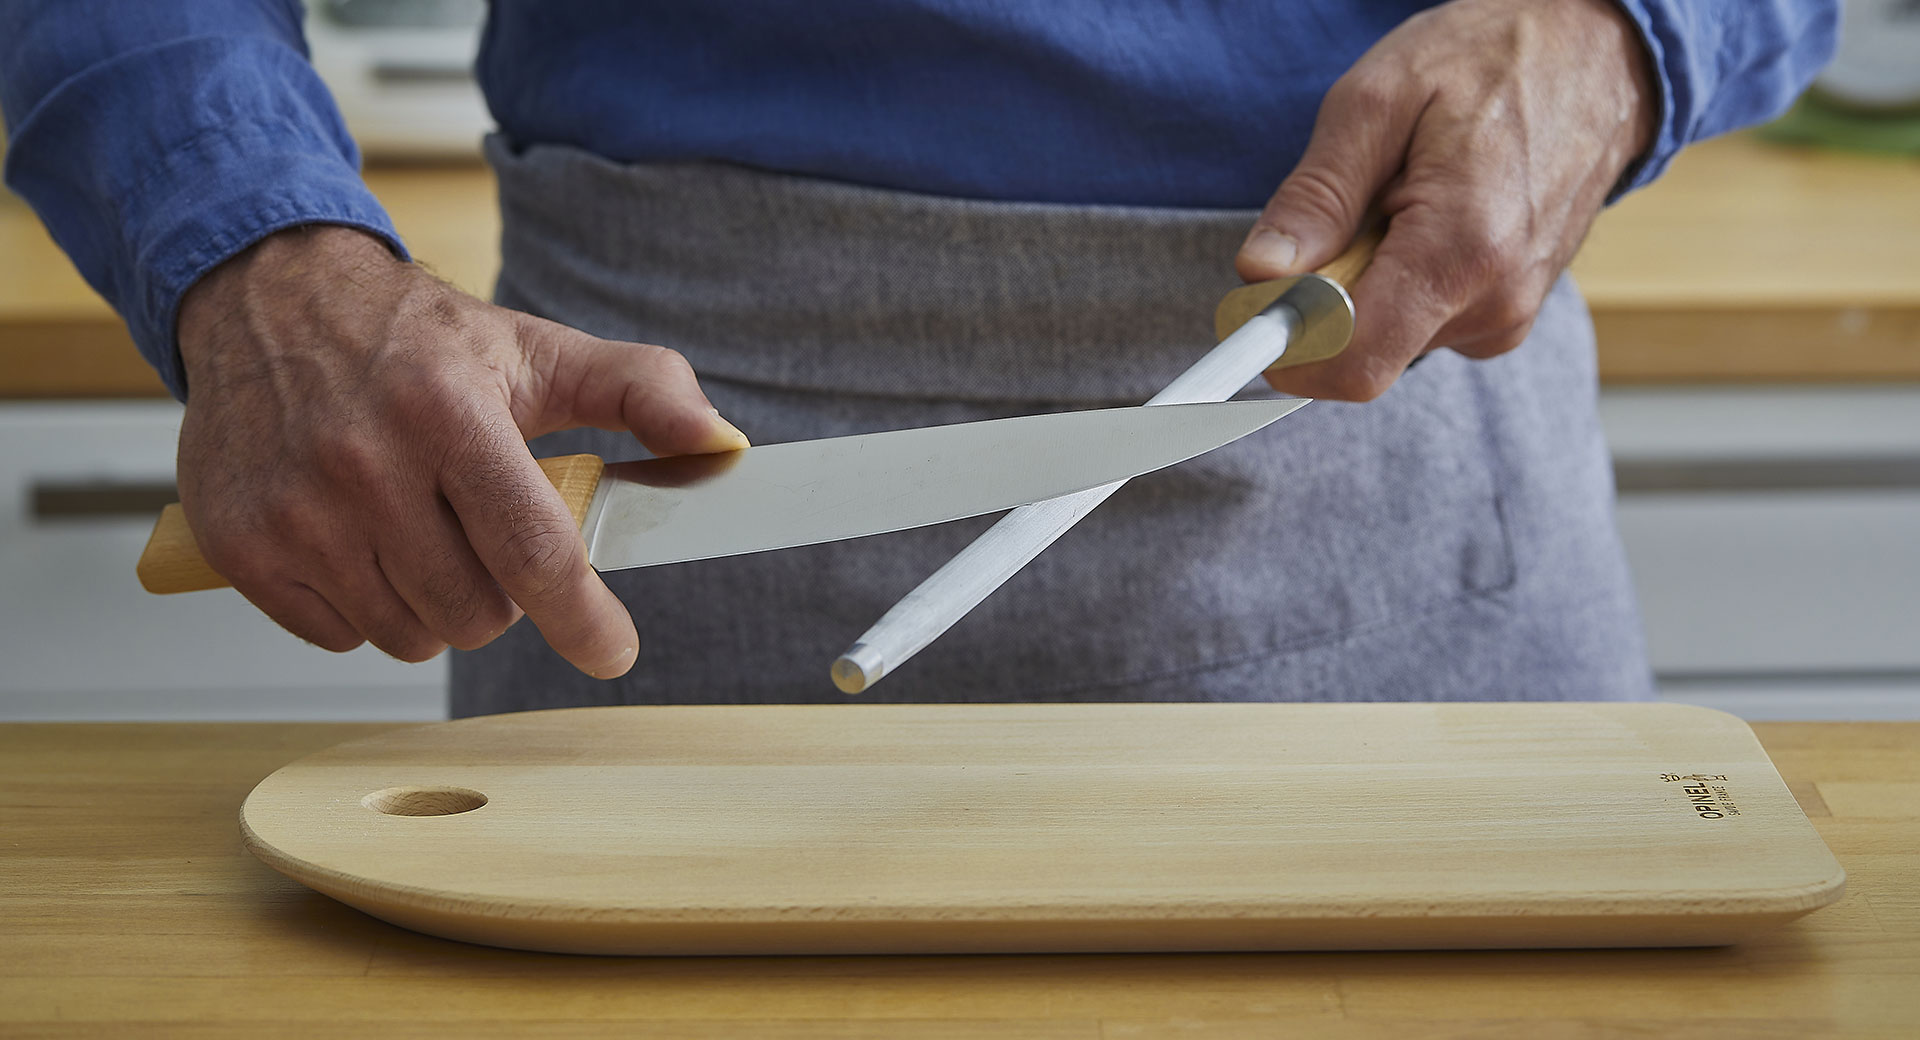 Mejore el proceso de afilado de sus cuchillos usando afiladores o chairas